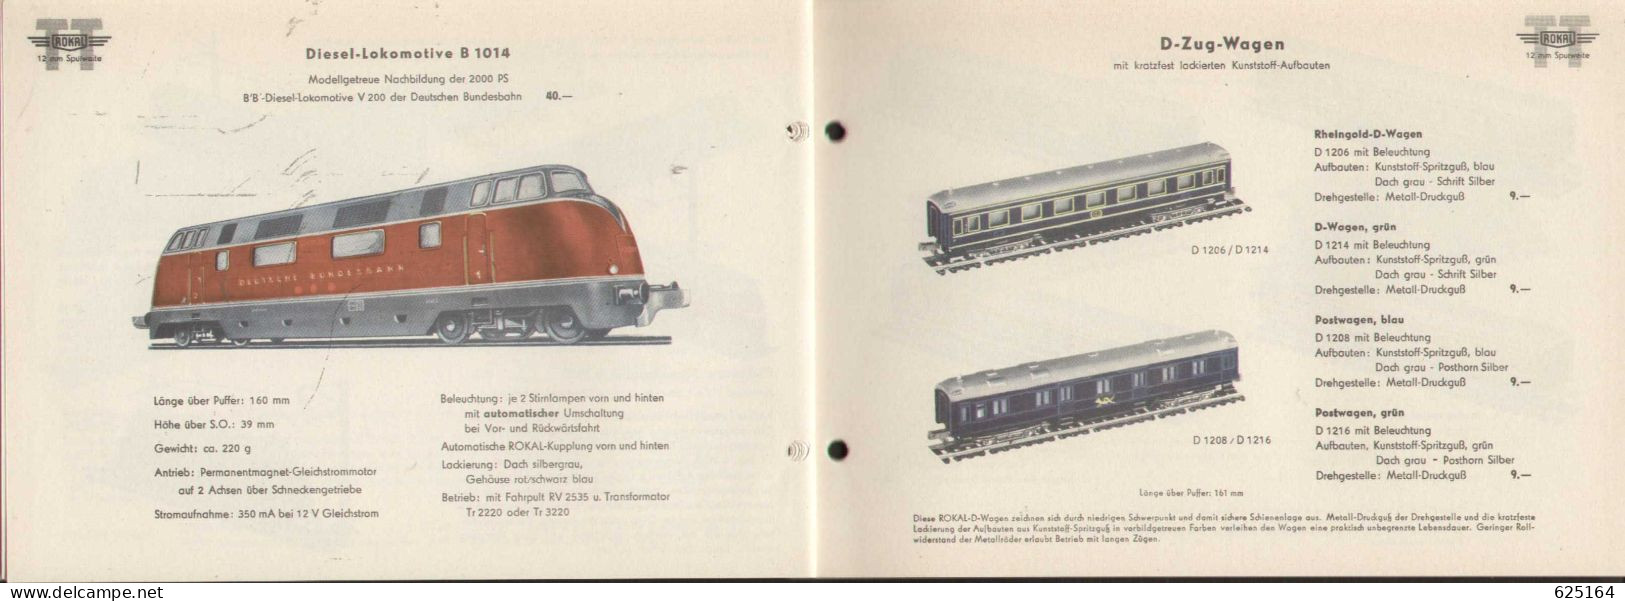 Catalogue Rokal 1958 Modellbahn-Katalog Spur TT 1:120 12 Mm - Deutsch